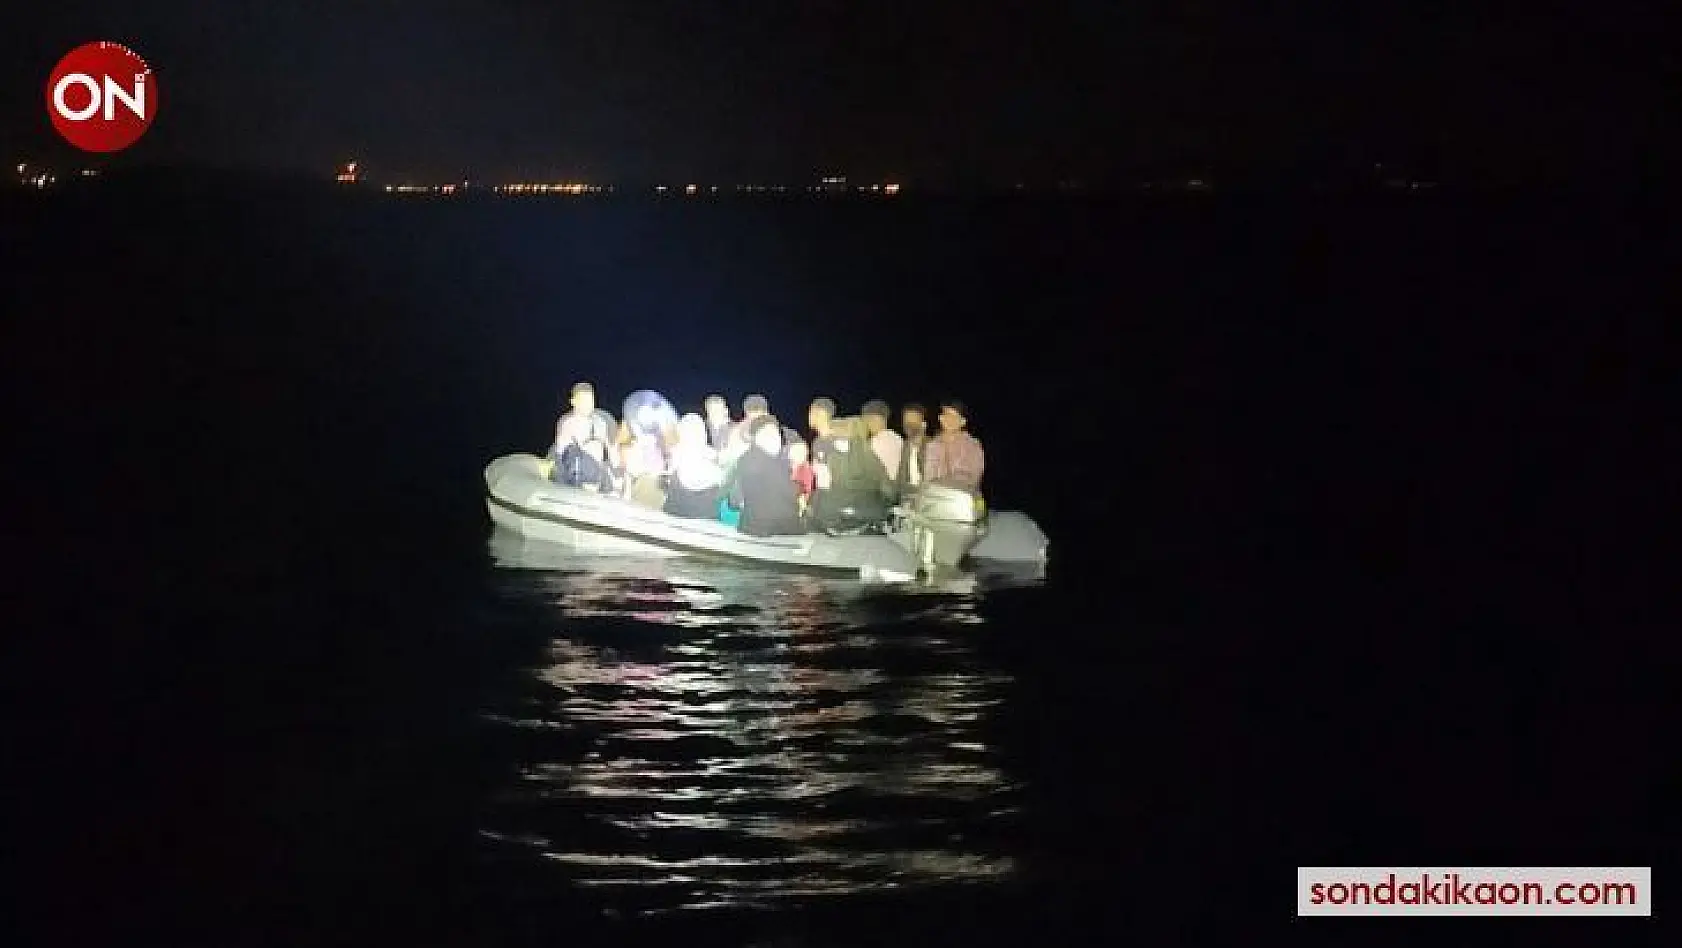 İzmir açıklarında lastik bottaki 23 göçmen kurtarıldı